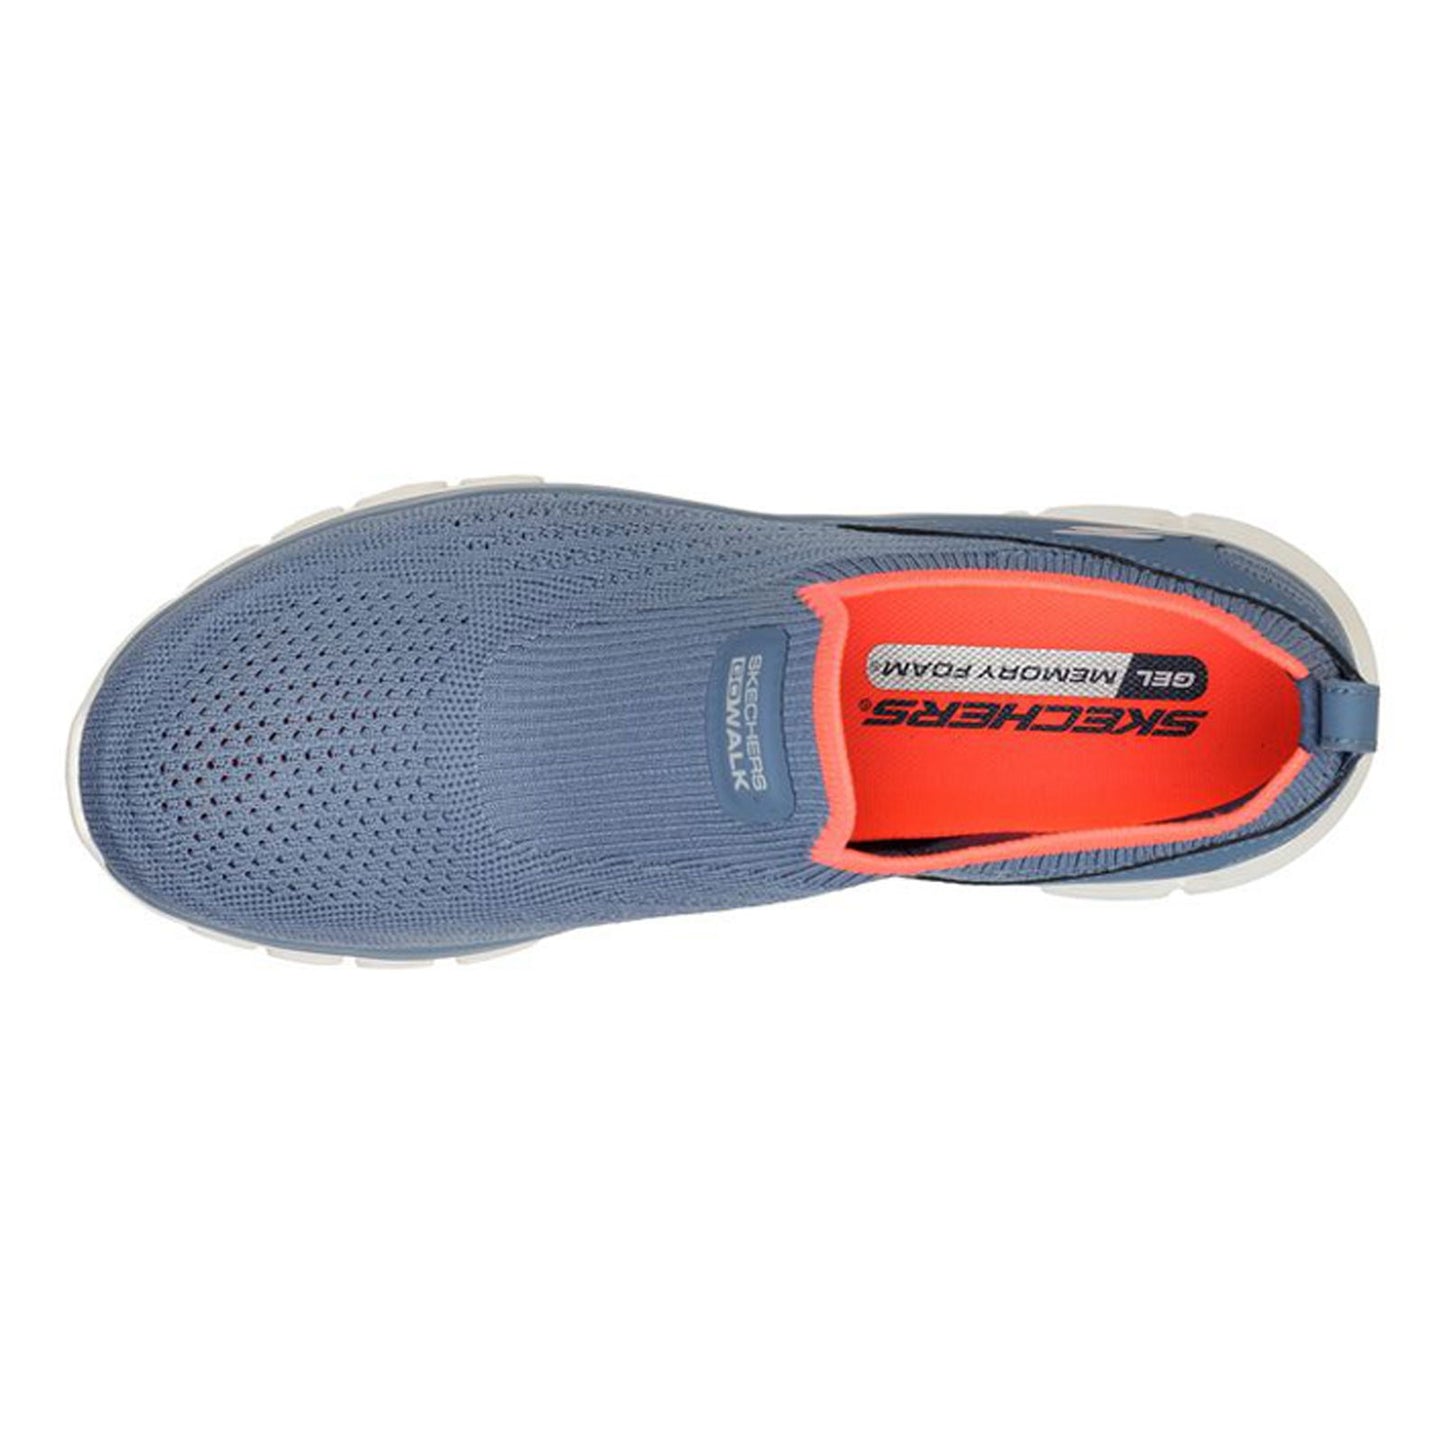 Peltz Shoes  Women's Skechers GO WALK Glide-Step Flex - Dazzling Joy Walking Shoe BLUE ORANGE 124809-BLCL